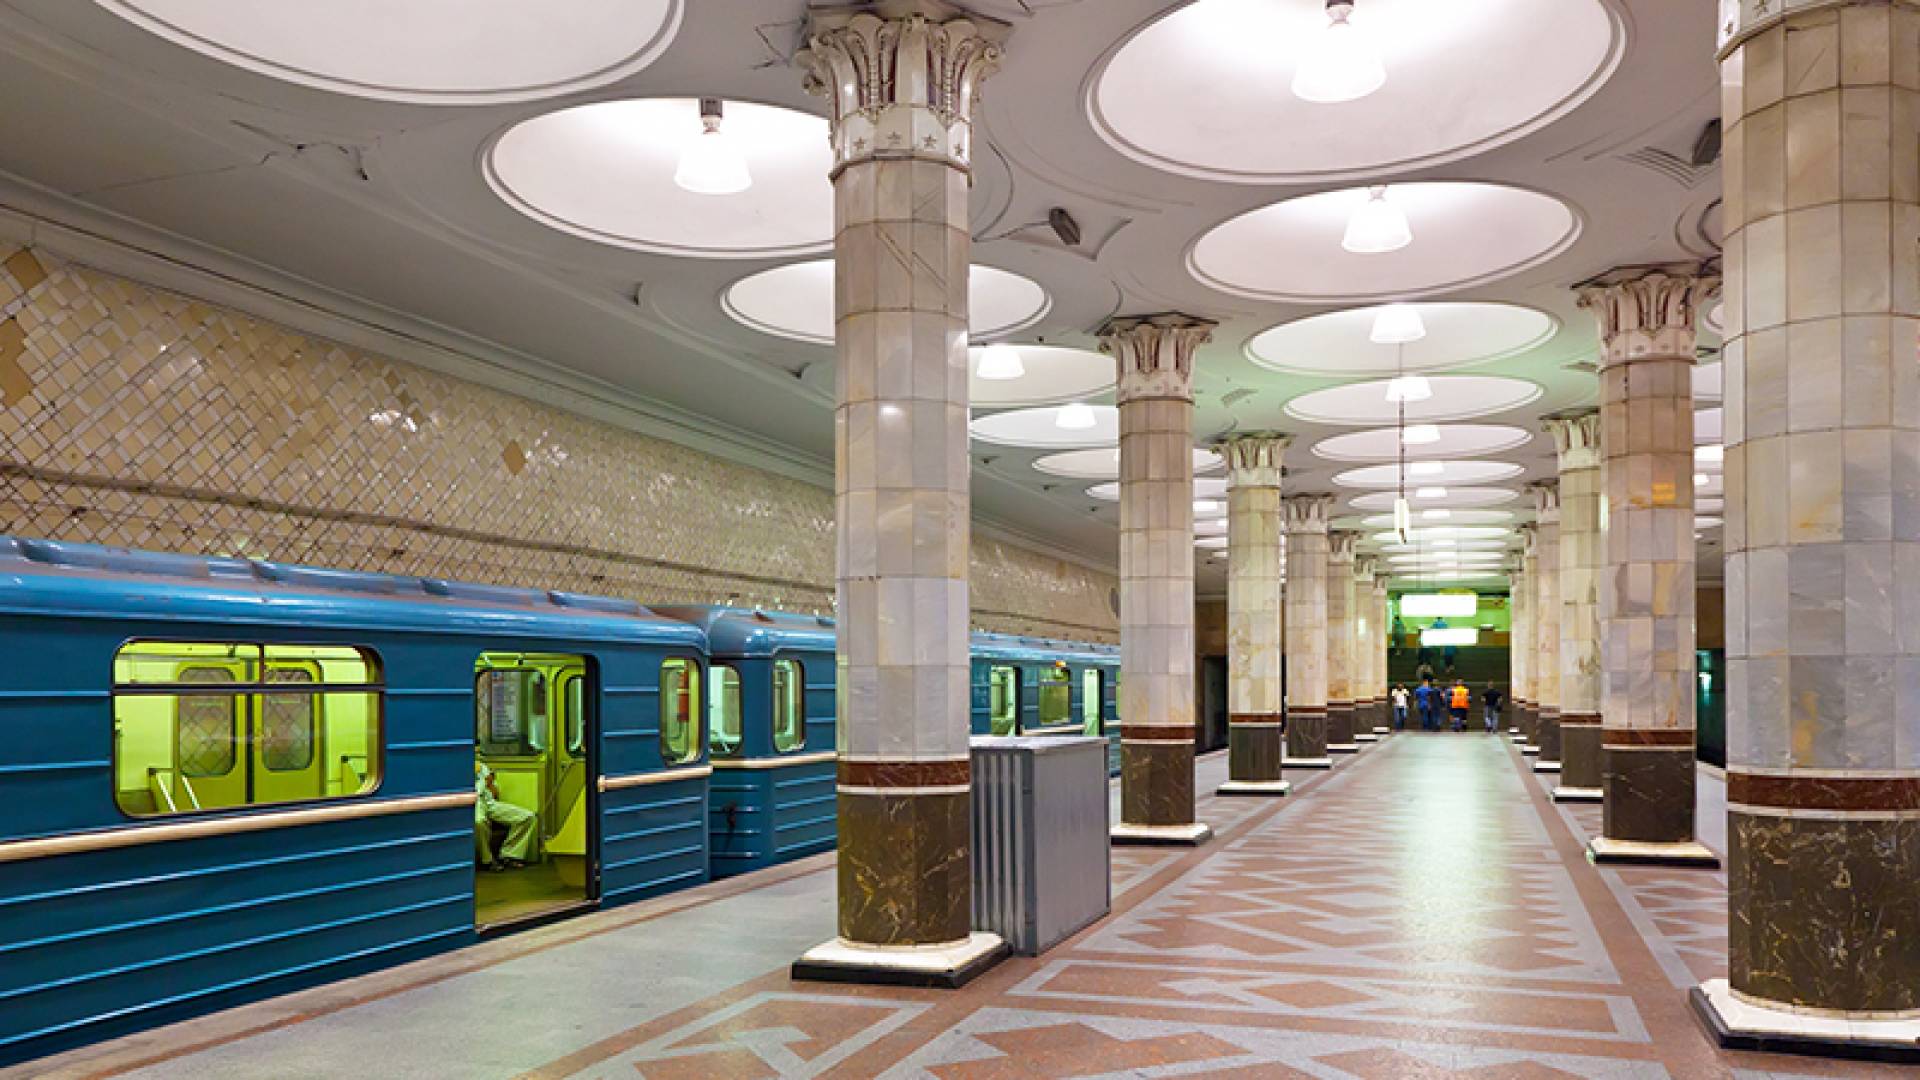 莫斯科地铁, 介绍